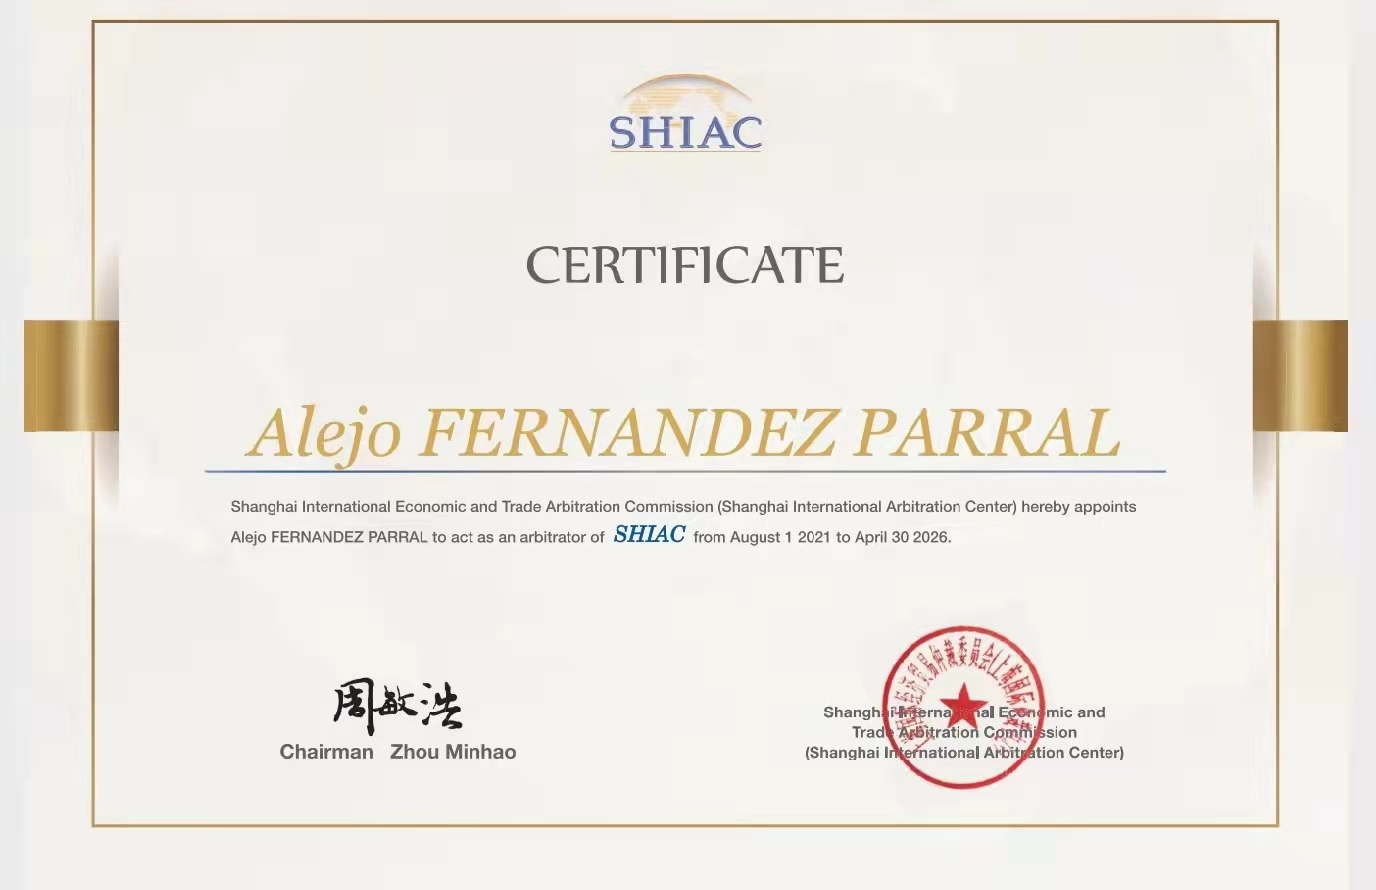 Alejo Fernandez Parral became international arbitrator for Shanghai International Arbitration Center.